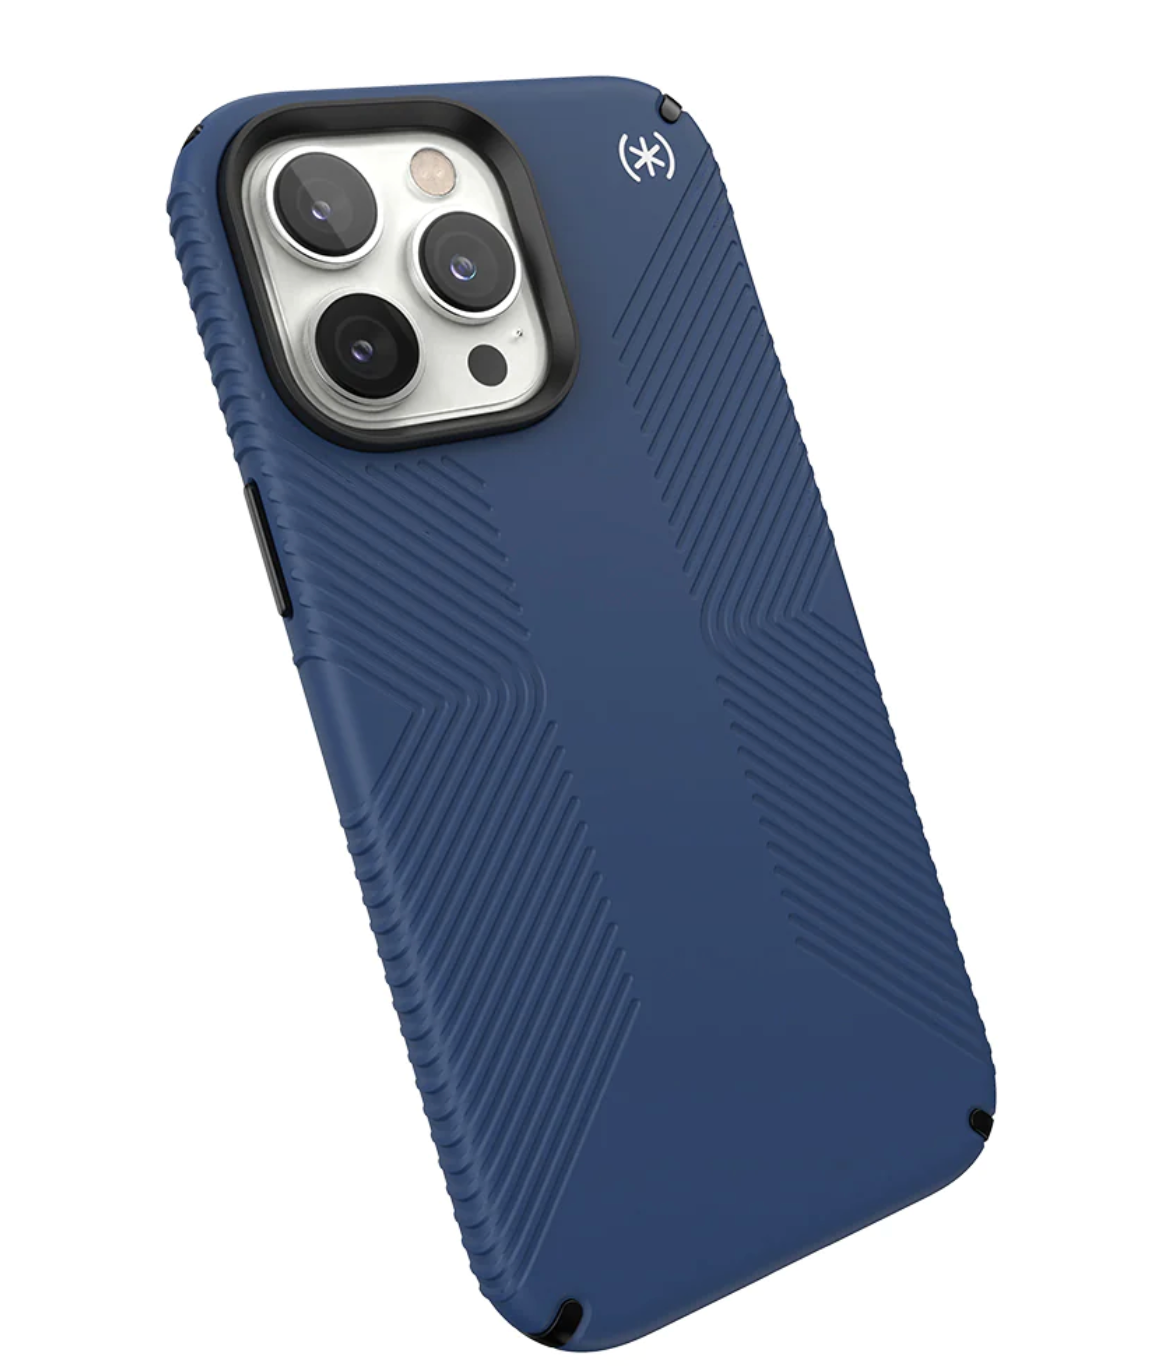 Speck Presidio2 Grip iPhone 14 Pro/Pro Max | Protective Phone Case & Non-Slip